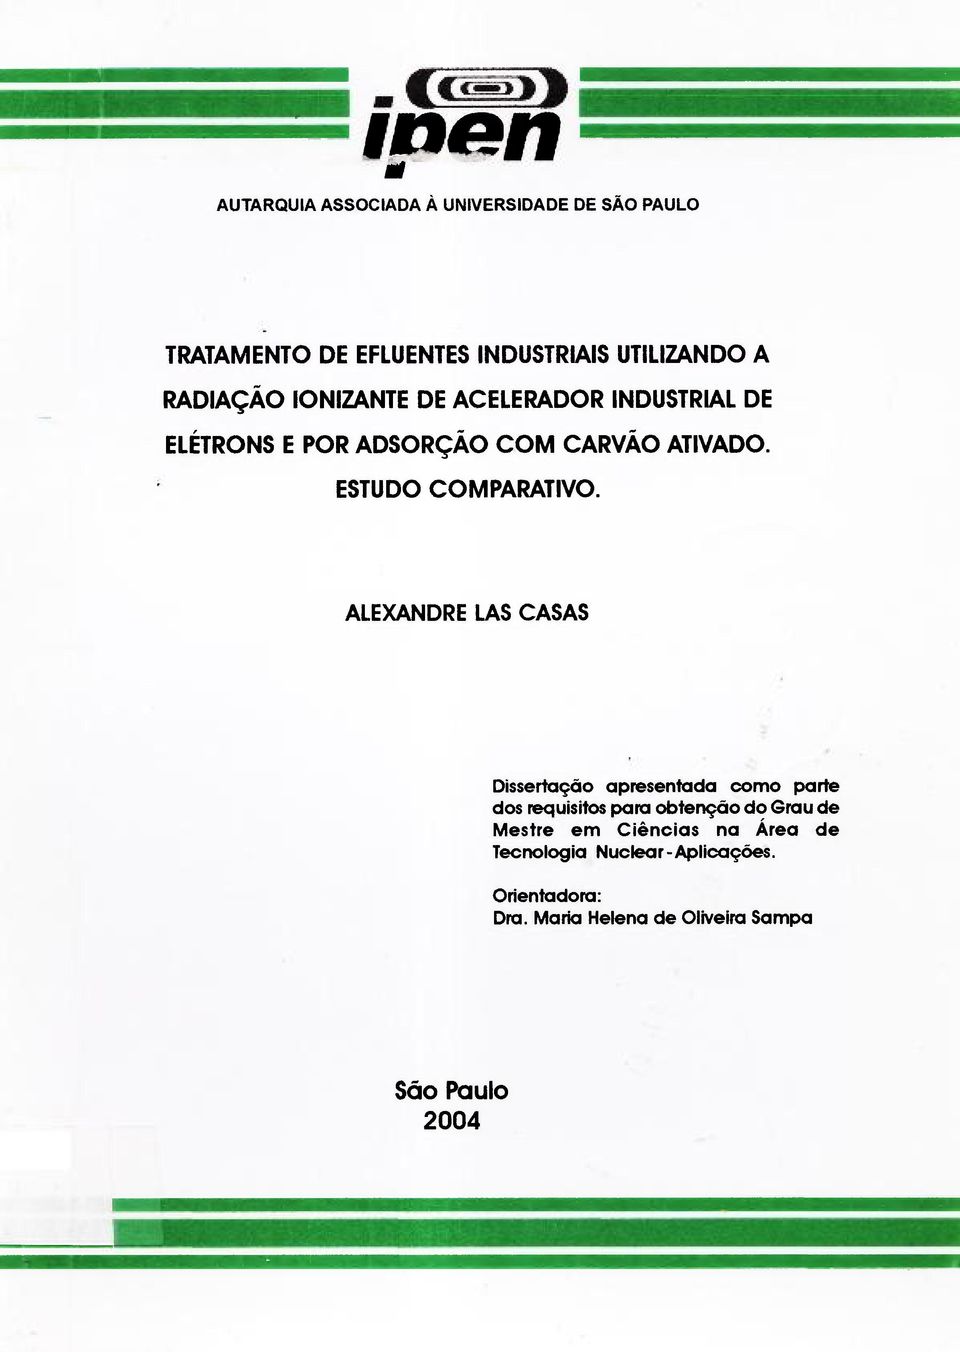 ALEXANDRE LAS CASAS Dissertação apresentada como parte dos requisitos para obtenção do Grau de Mestre em